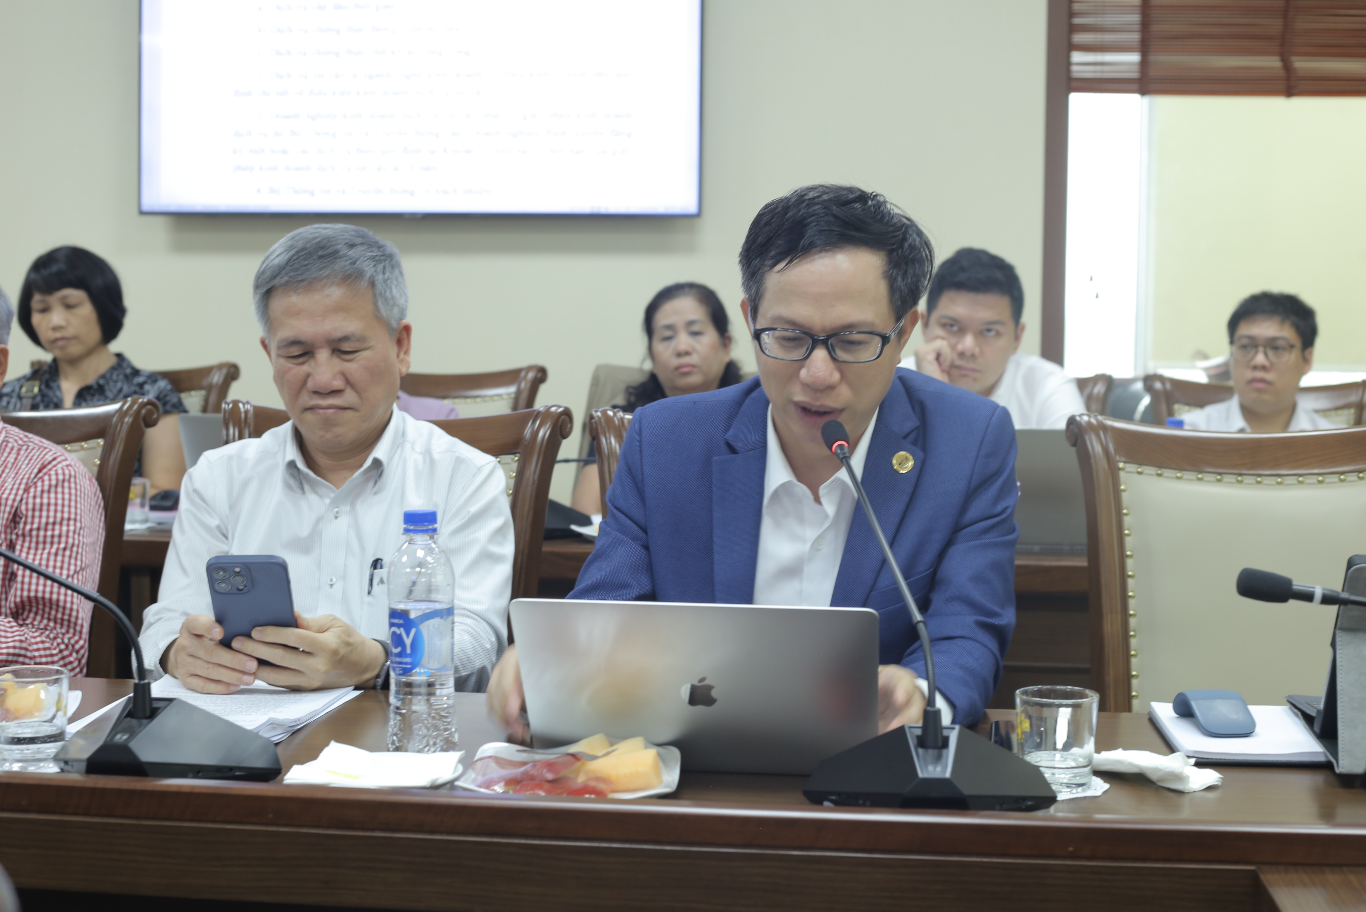 Ông Nguyễn Xuân Hoàng, Phó Chủ tịch HĐQT CTCP MISA đóng góp về nội dung chữ ký số được nhiều đại biểu quan tâm.